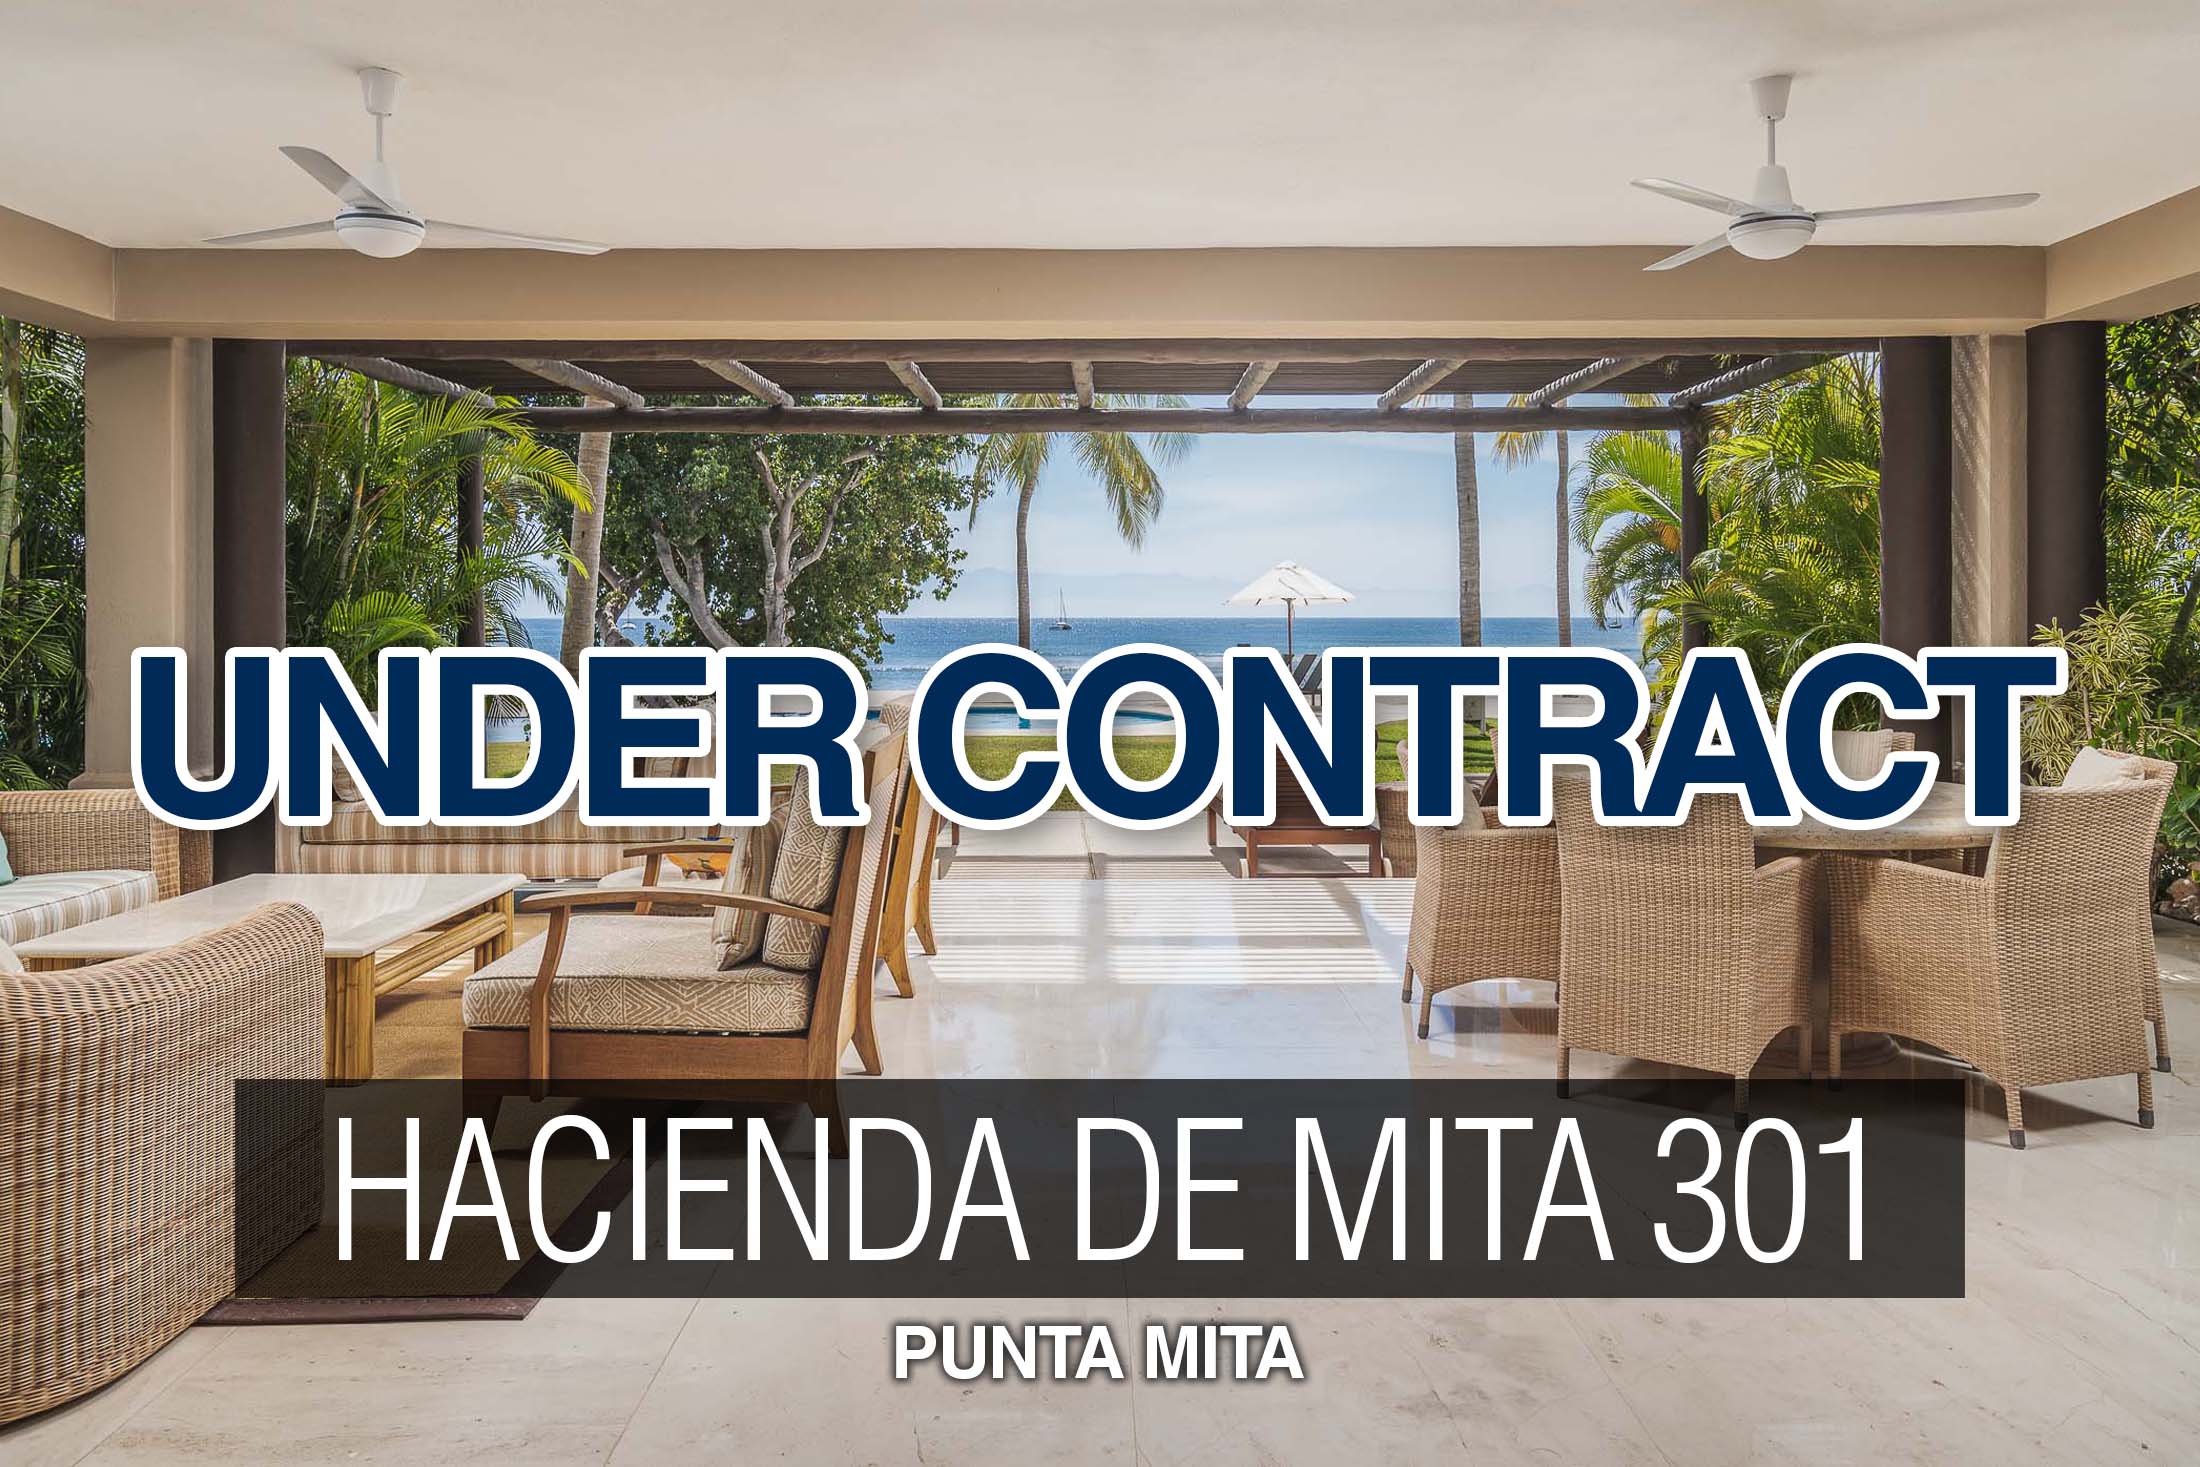 Hacienda-de-Mita-301-for-sale-punta-mita-under-contract